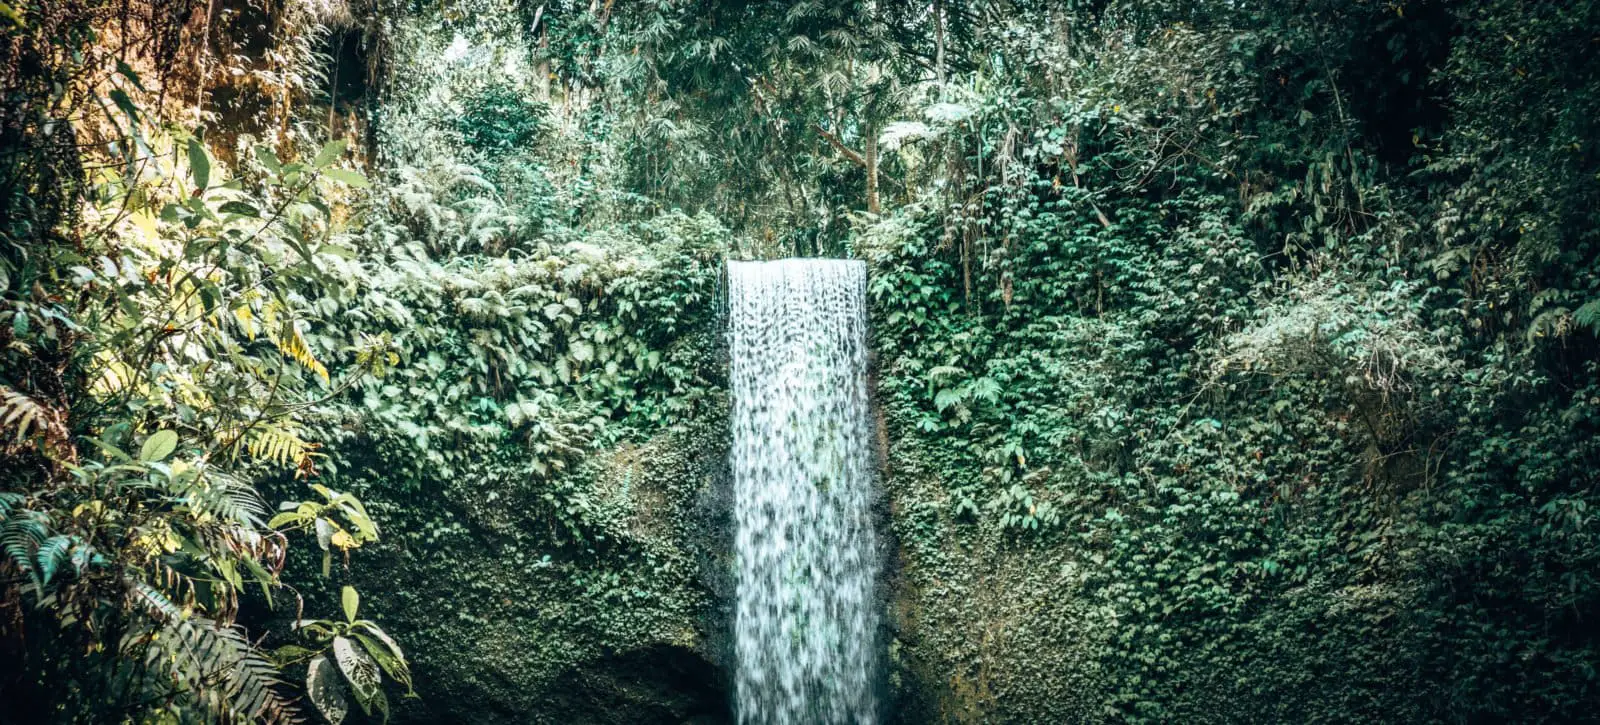 Ubud Waterfall Tour - Tibumana Waterfall Header